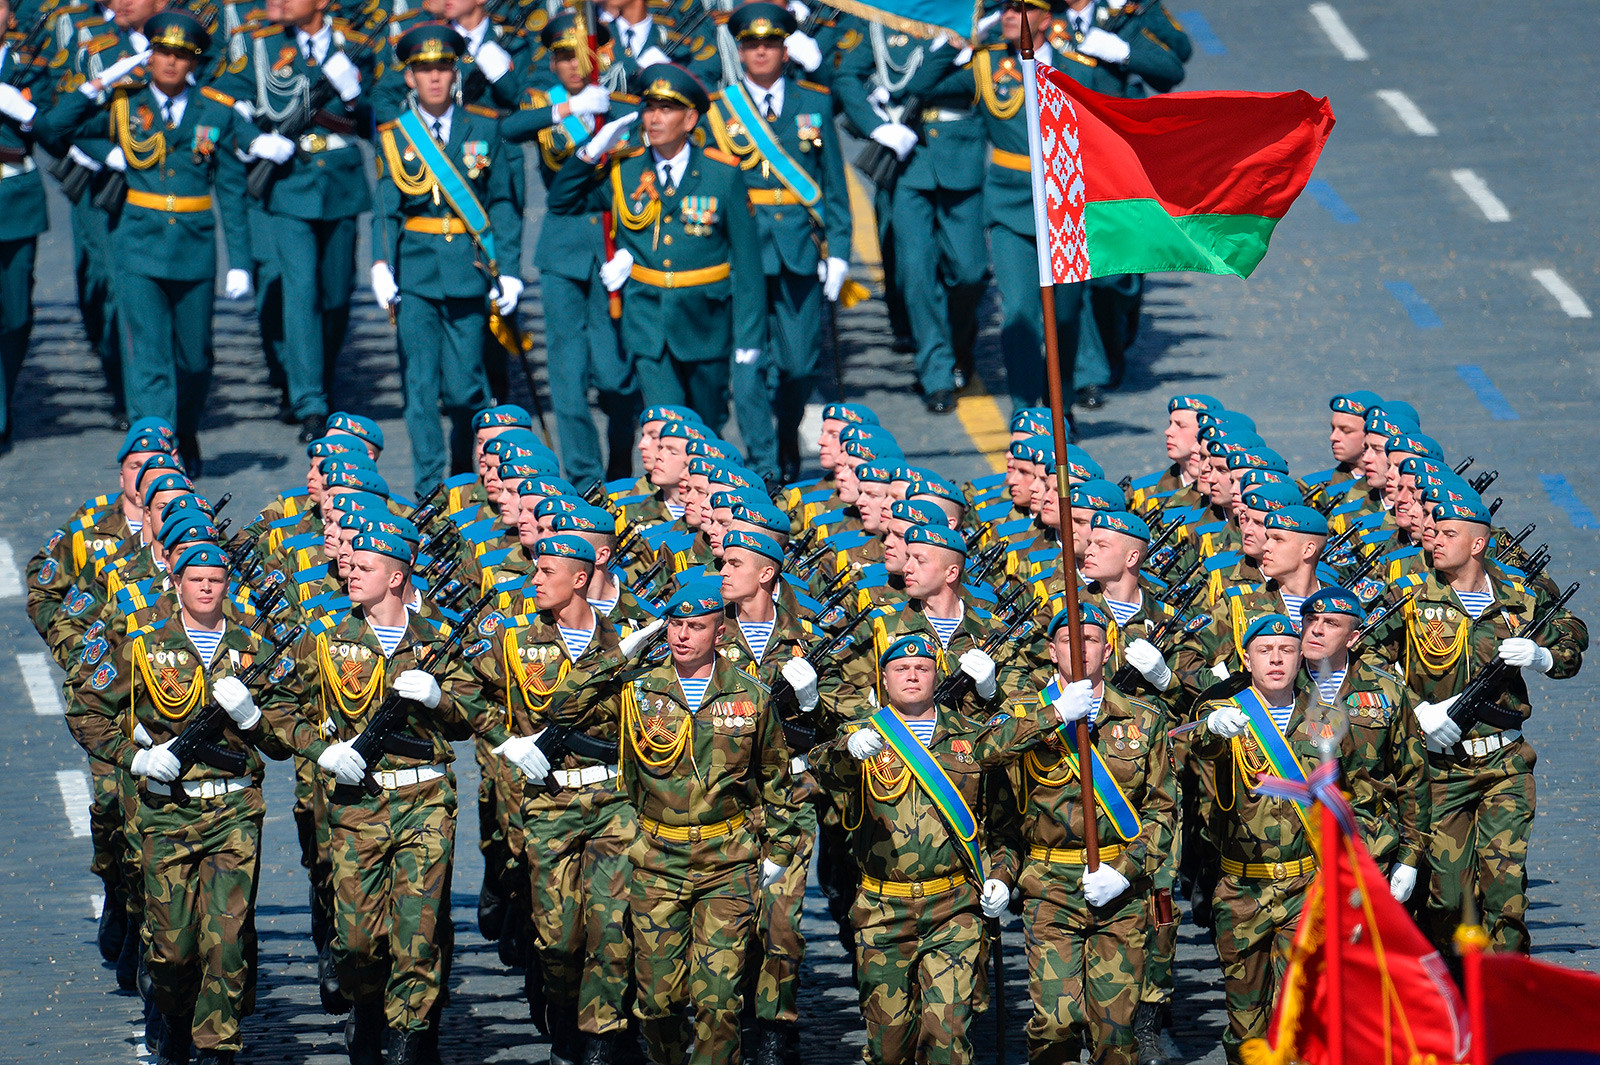 Vojnici Oružanih snaga Bjelorusije na generalnoj probi vojne parade u čast 70. godišnjice Pobjede u Velikom domovinskom ratu 1941.-1945.

